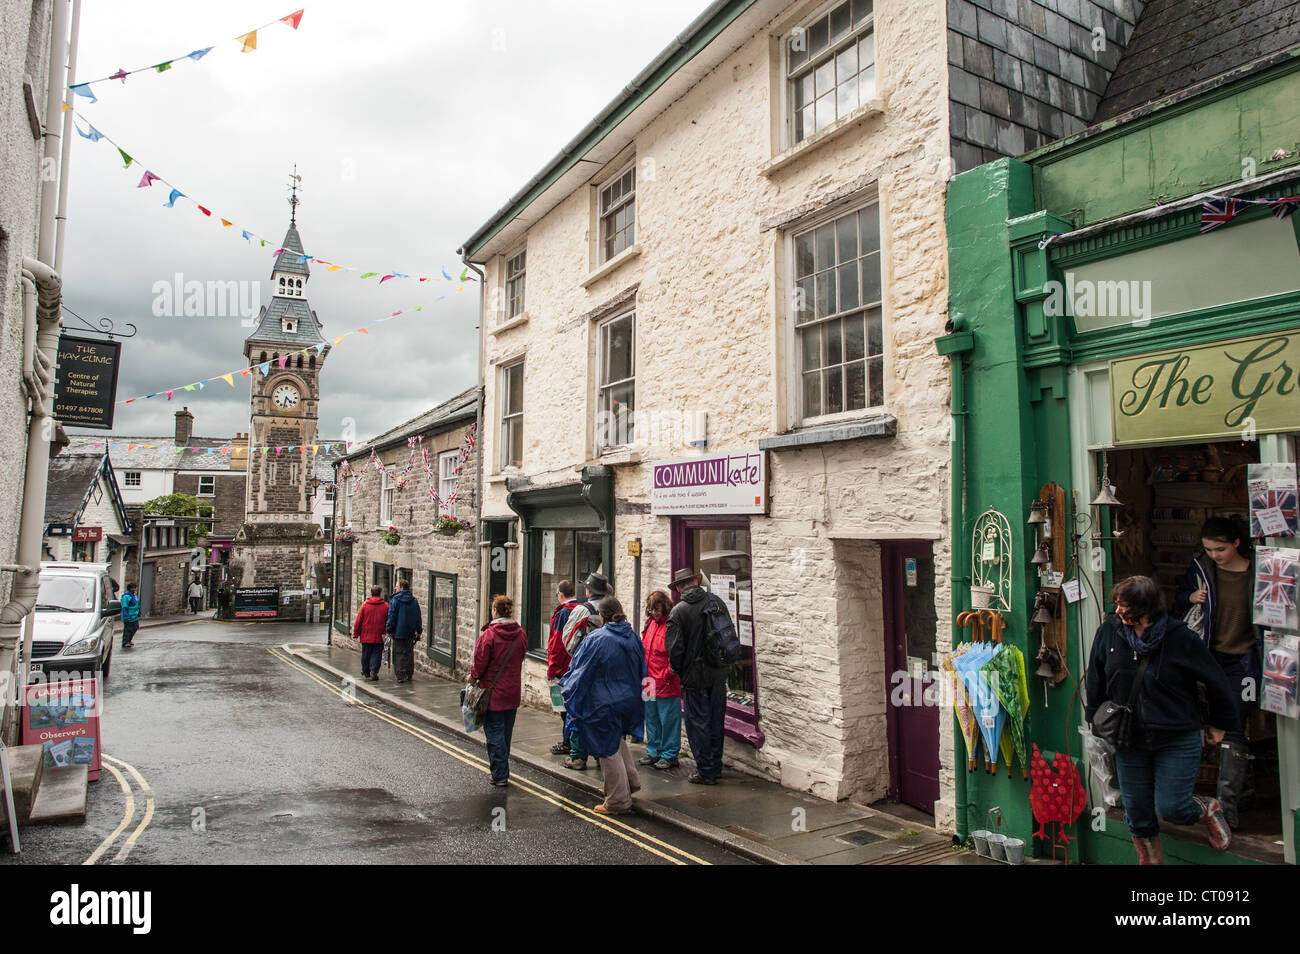 HAY-on-Wye, au Pays de Galles - rue du centre-ville avec des magasins à Hay-on-Wye dans l'Est du pays de Galles. Décrite comme 'la ville de livres", il accueille chaque année un festival littéraire connu sous le nom de Hay Festival. Banque D'Images